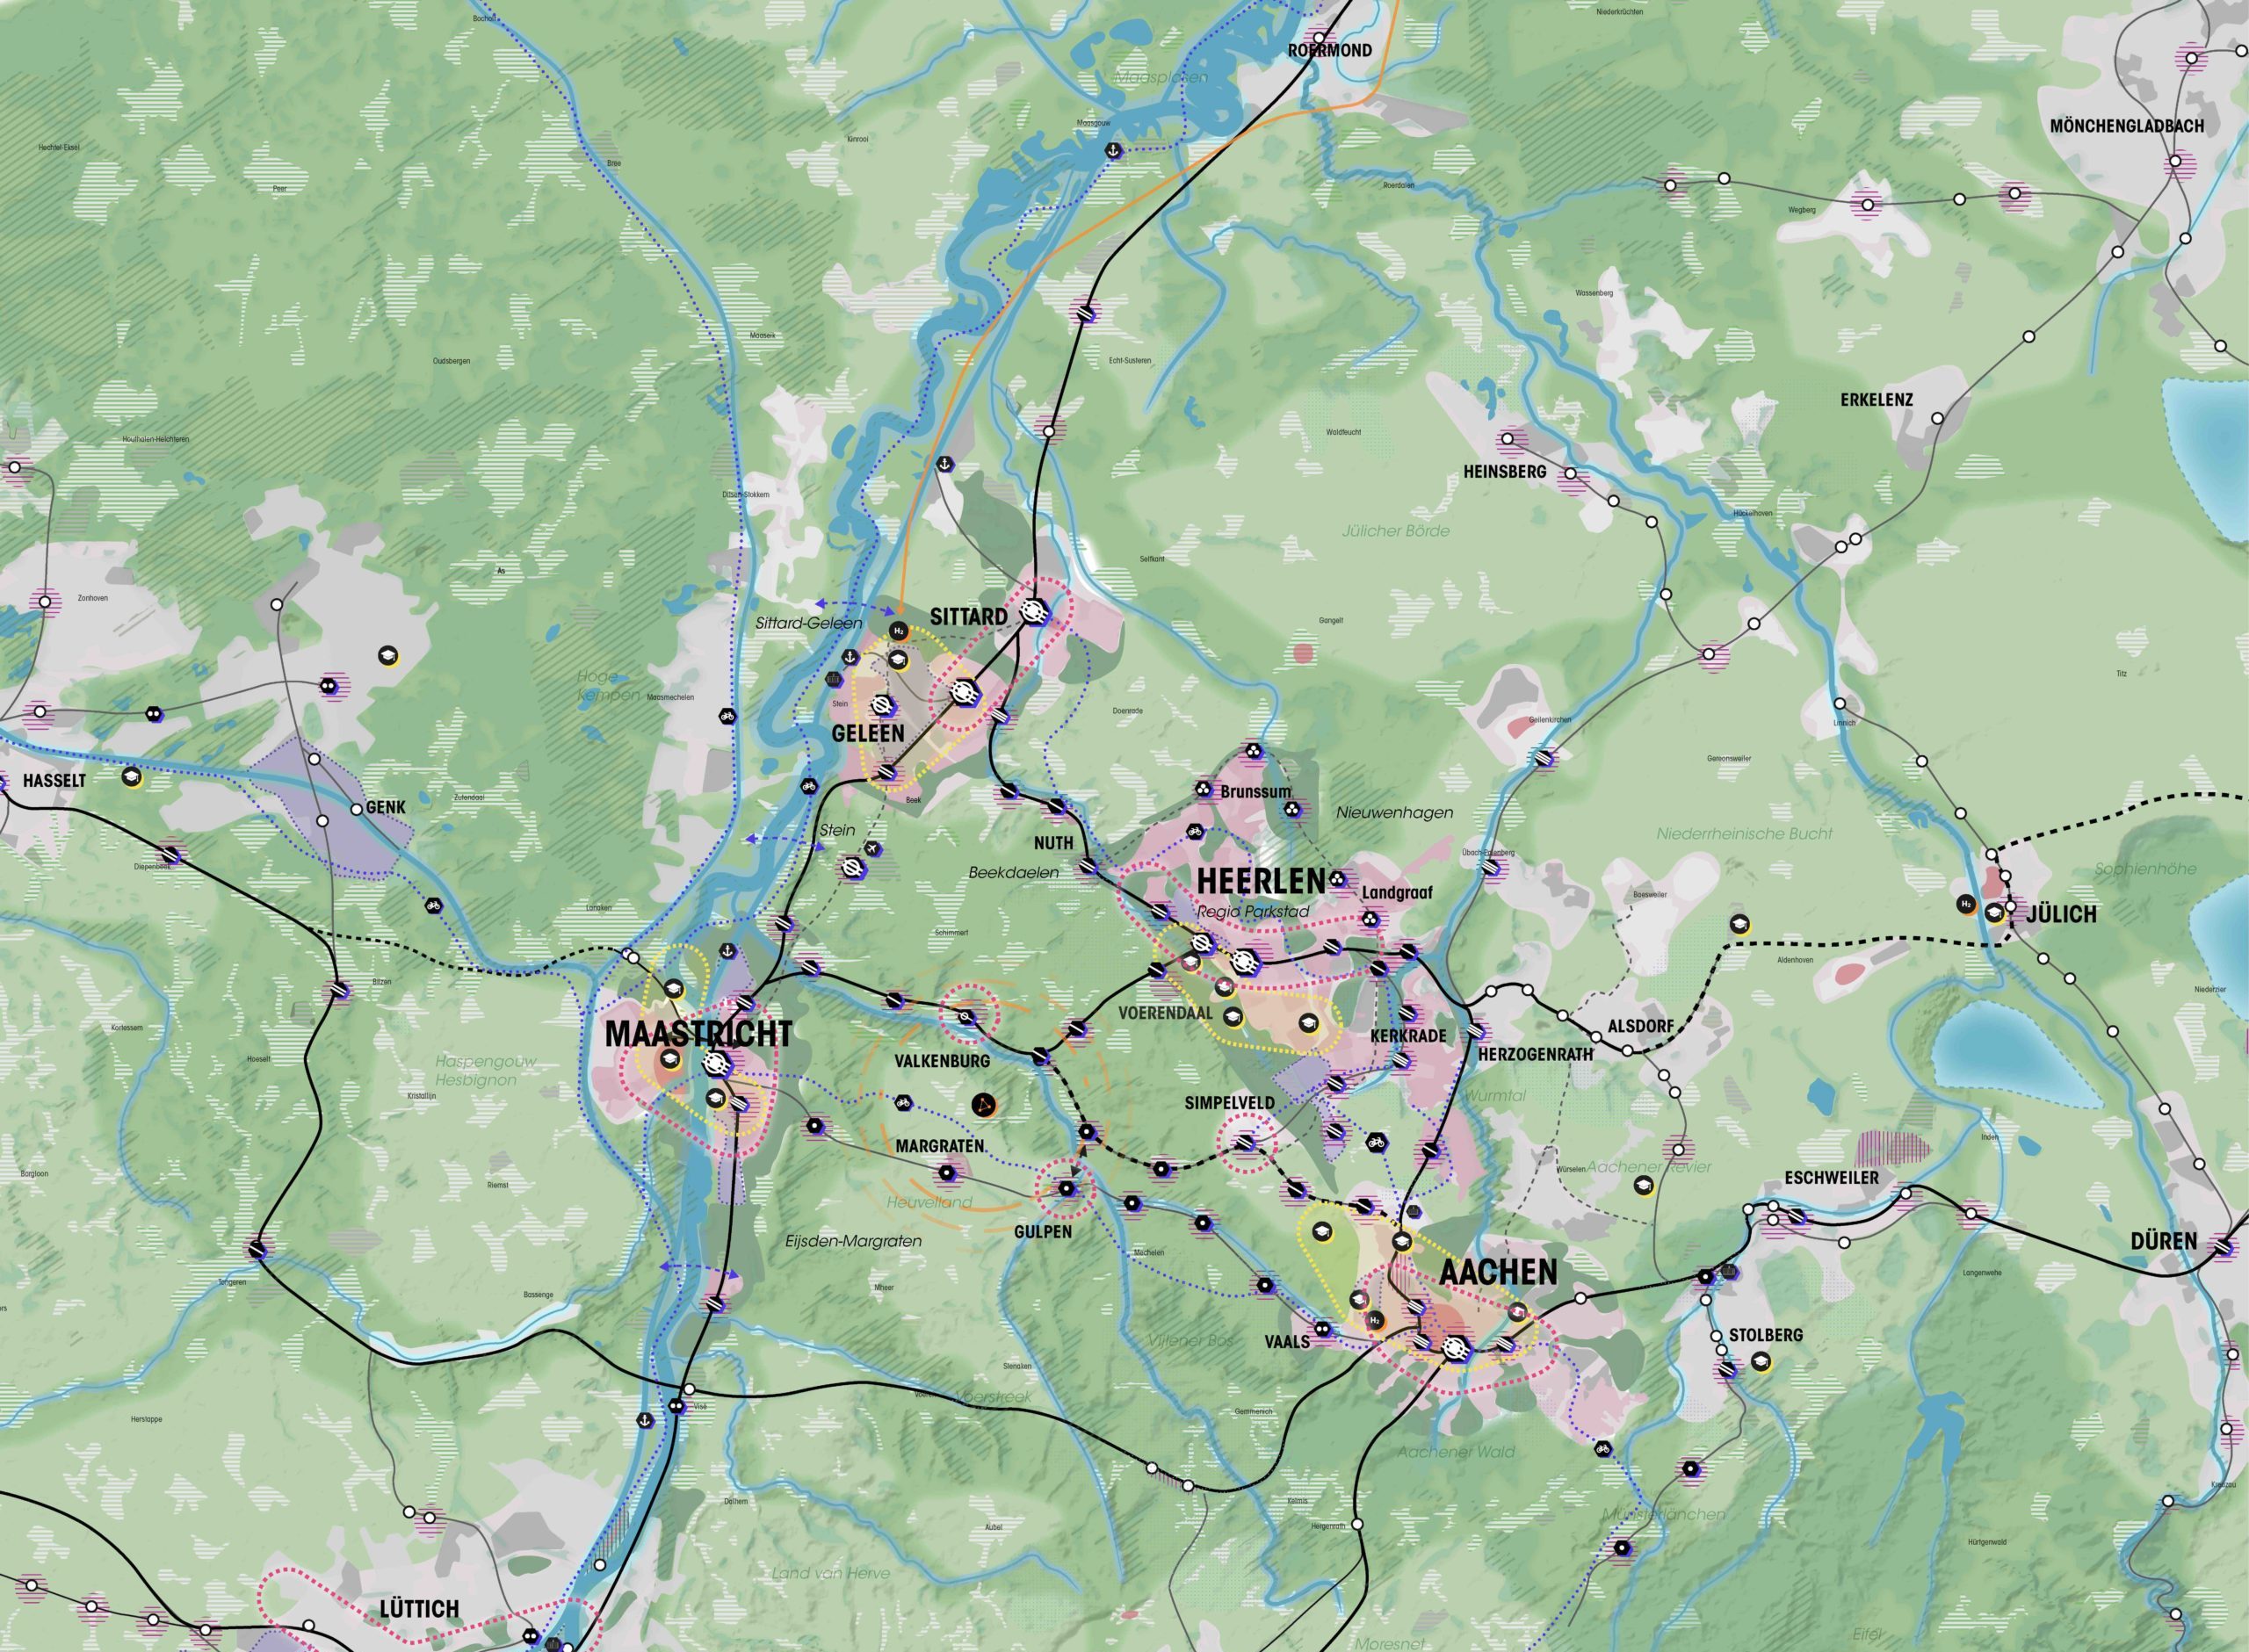 Raumbild der Region Zuid-Limburg